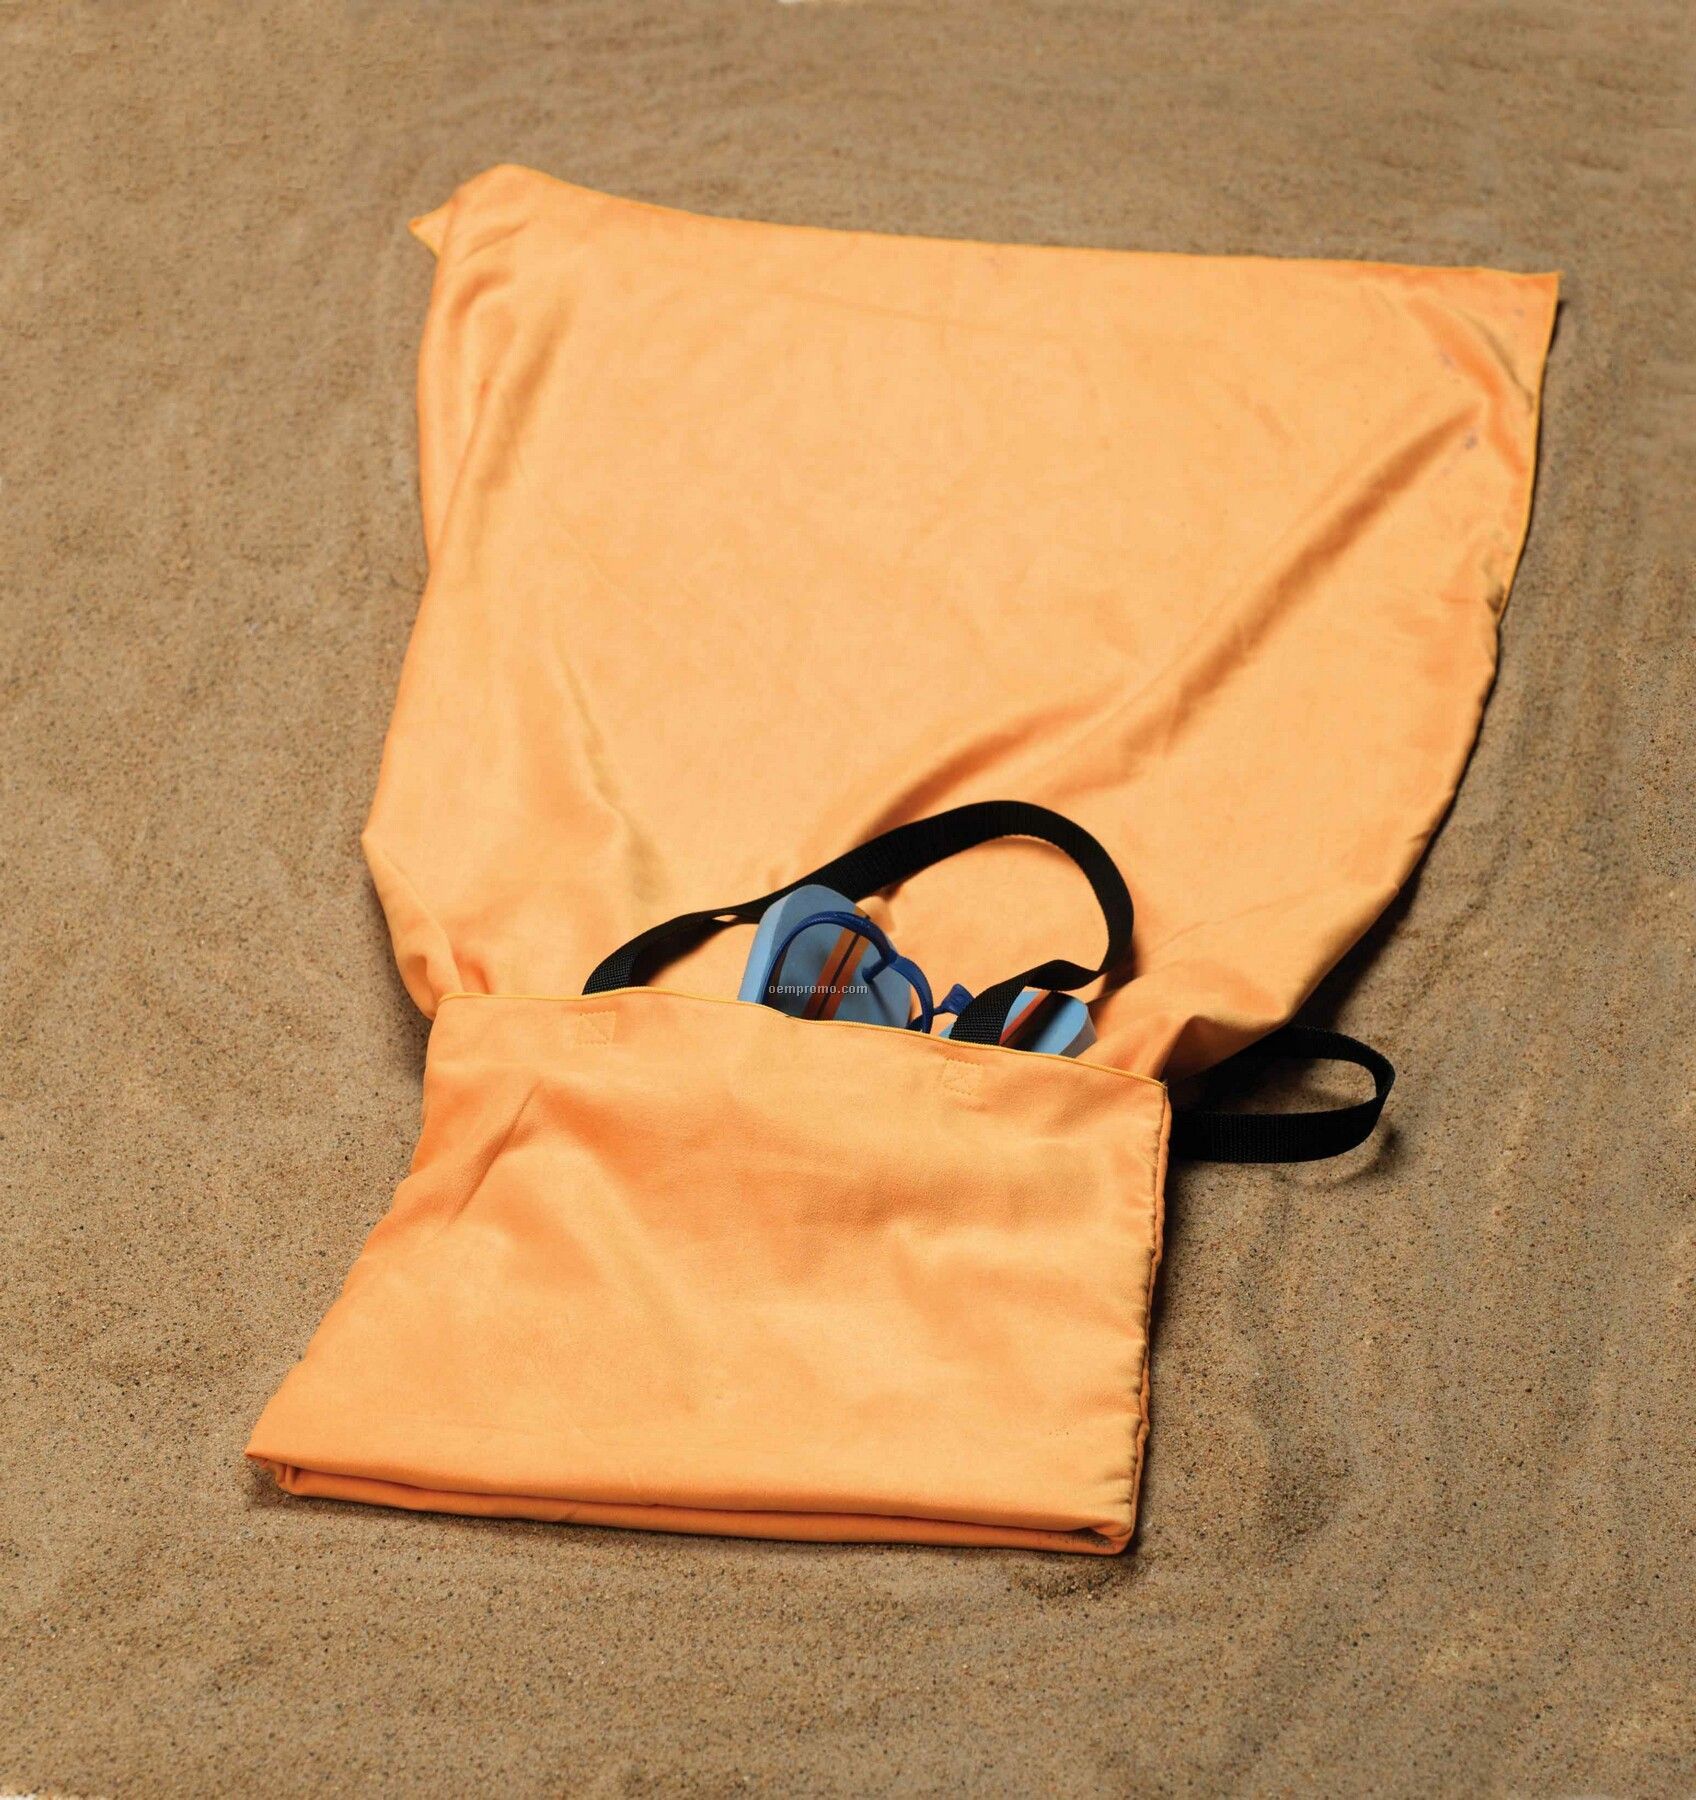 The Dri-lite Towel 'n Tote Bag